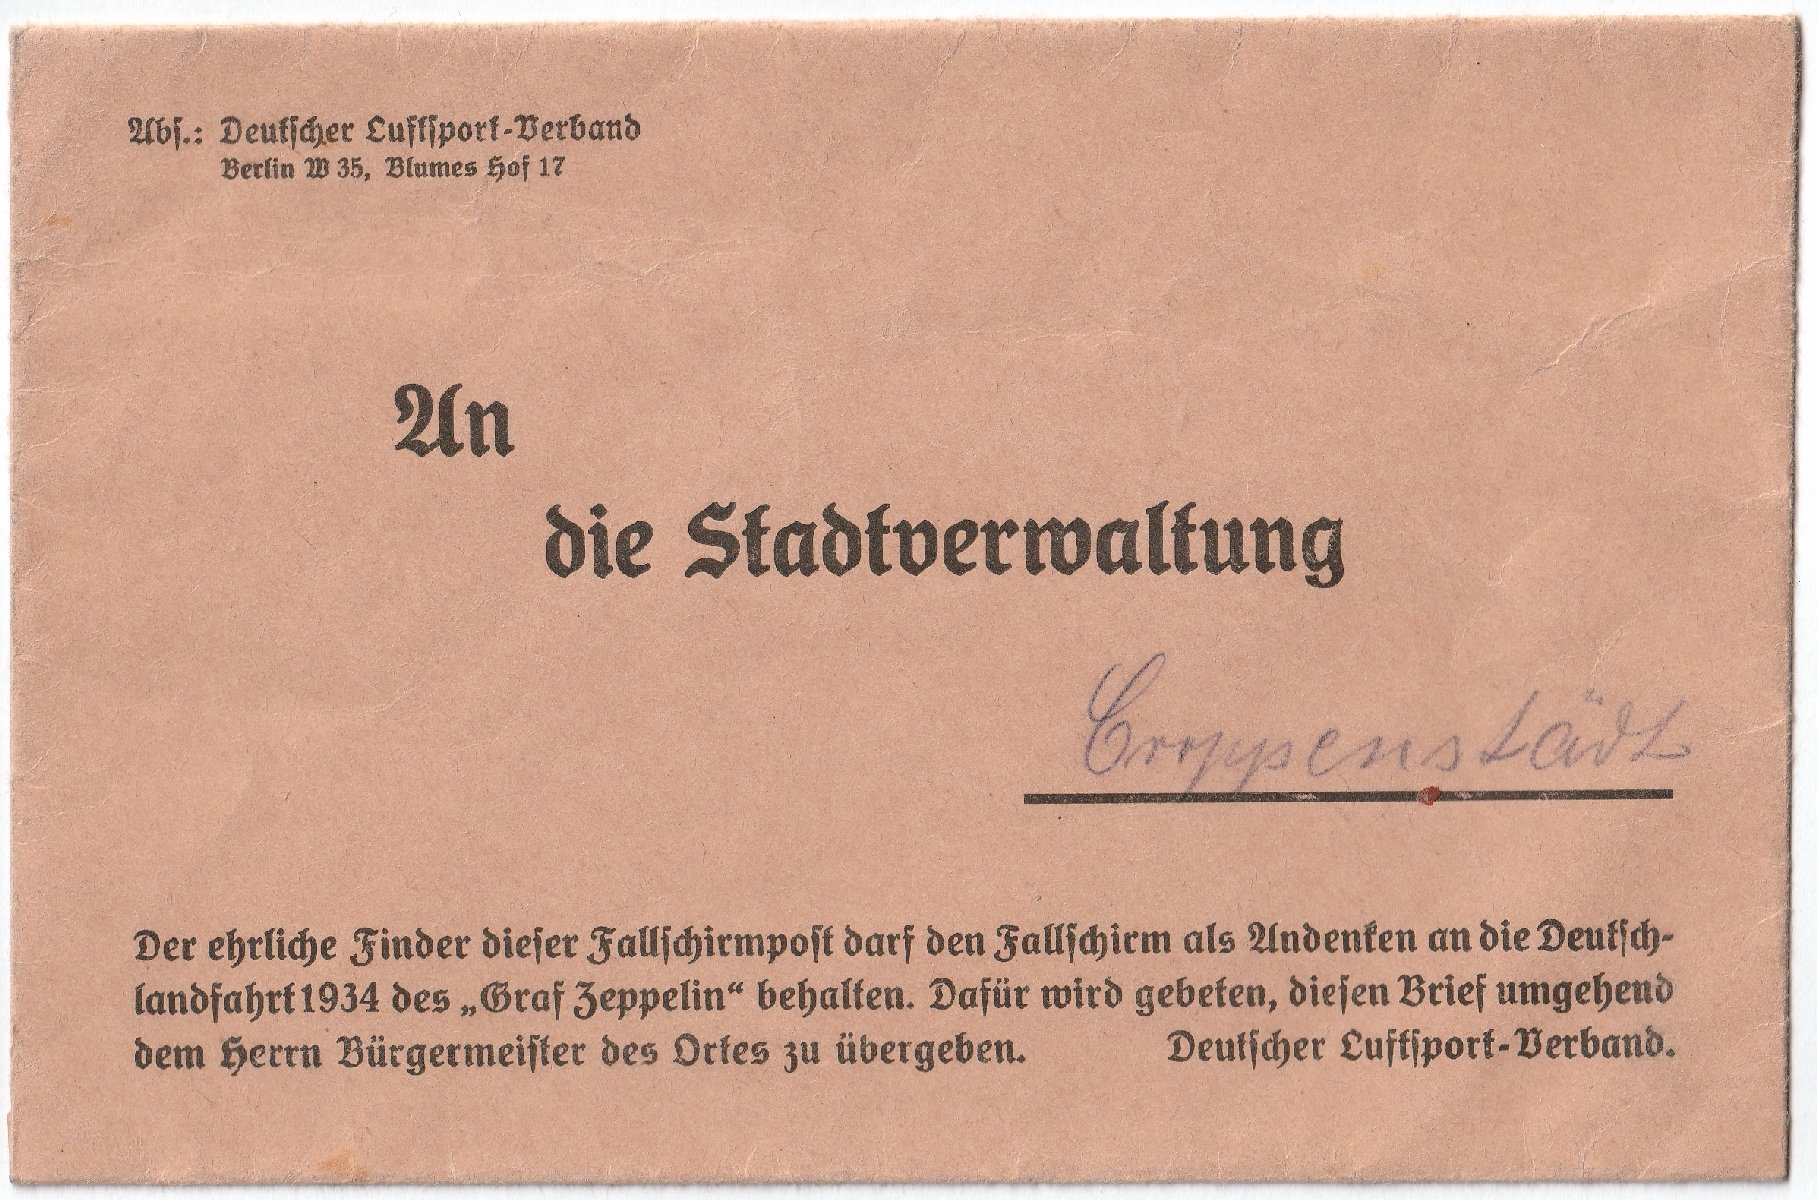 Abwurf Kroppenstedt der Deutschlandfahrt 1934 des LZ 127 - GRAF ZEPPELIN (Sammlung Luftfahrt.Industrie.Westfalen | Moritz-Adolf Trappe CC BY-NC-SA)